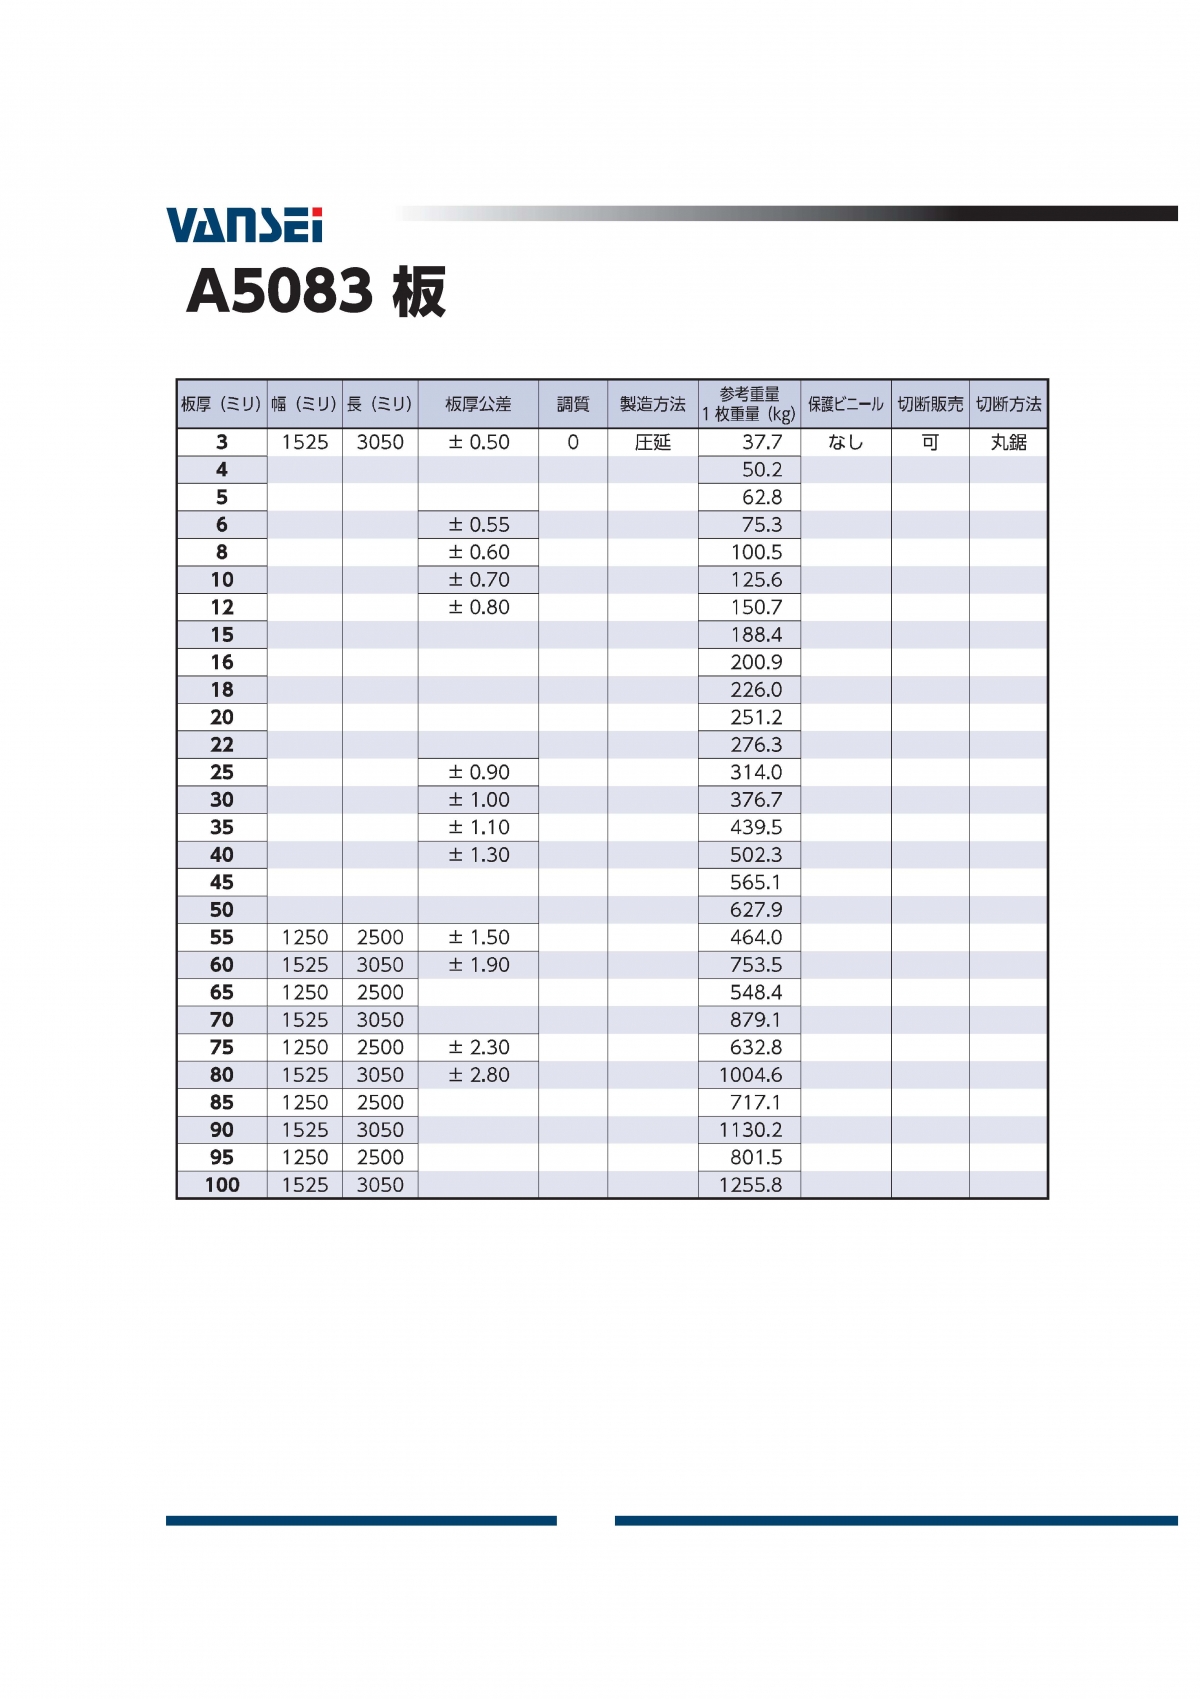 アルミ 7050-T7451 AMS 4050 切板 板厚 69.85ｍｍ 短手 200mm×350mm 